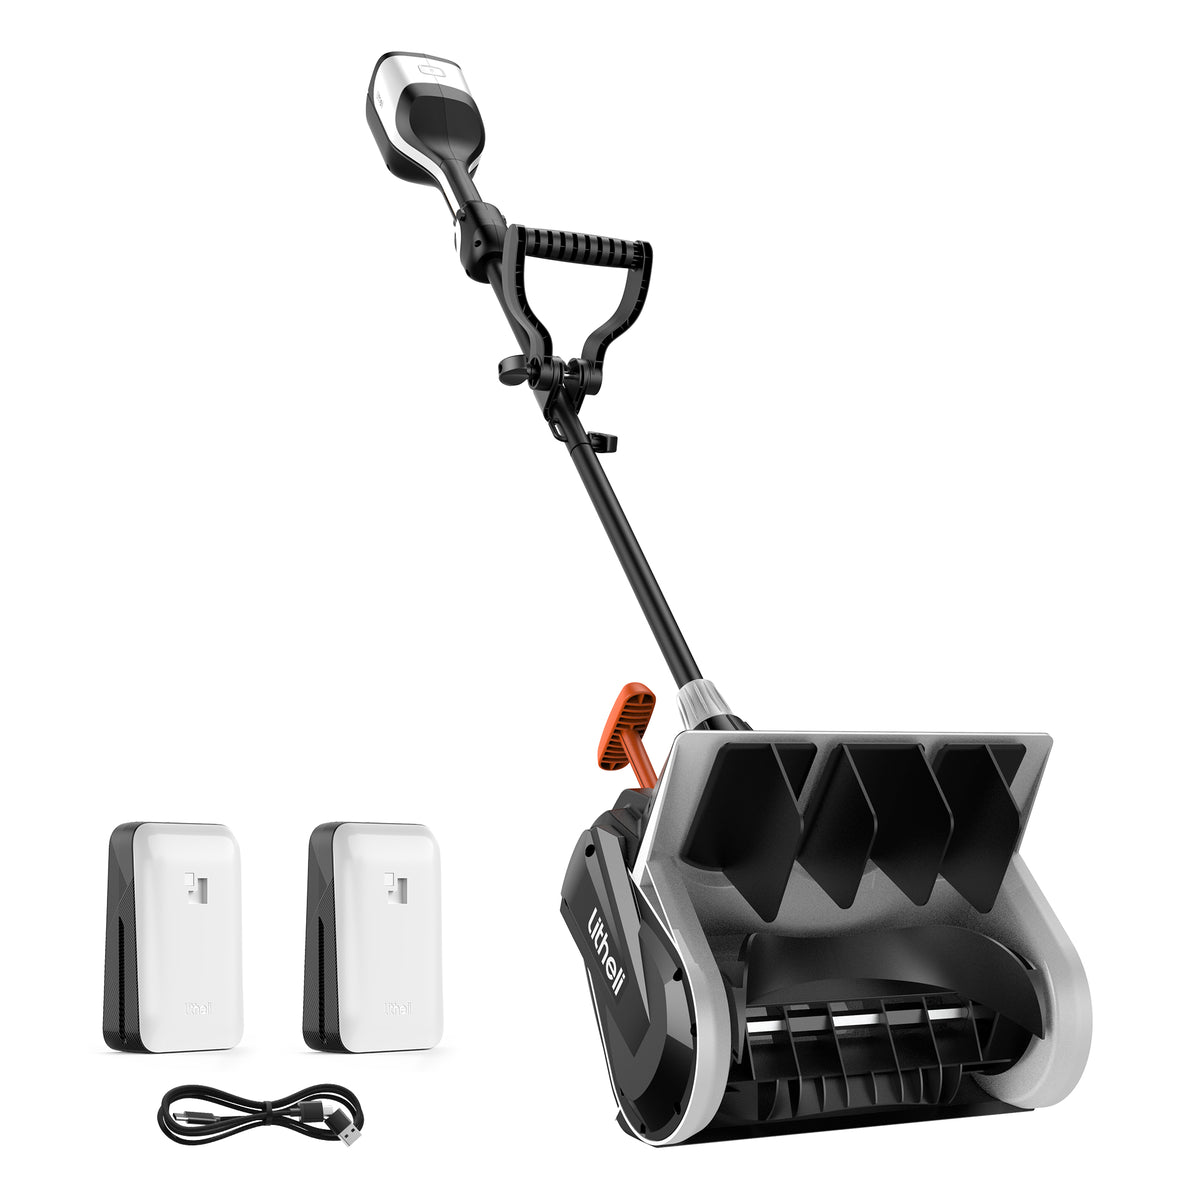  Snow Blower Accessories - BLACK+DECKER / Snow Blower